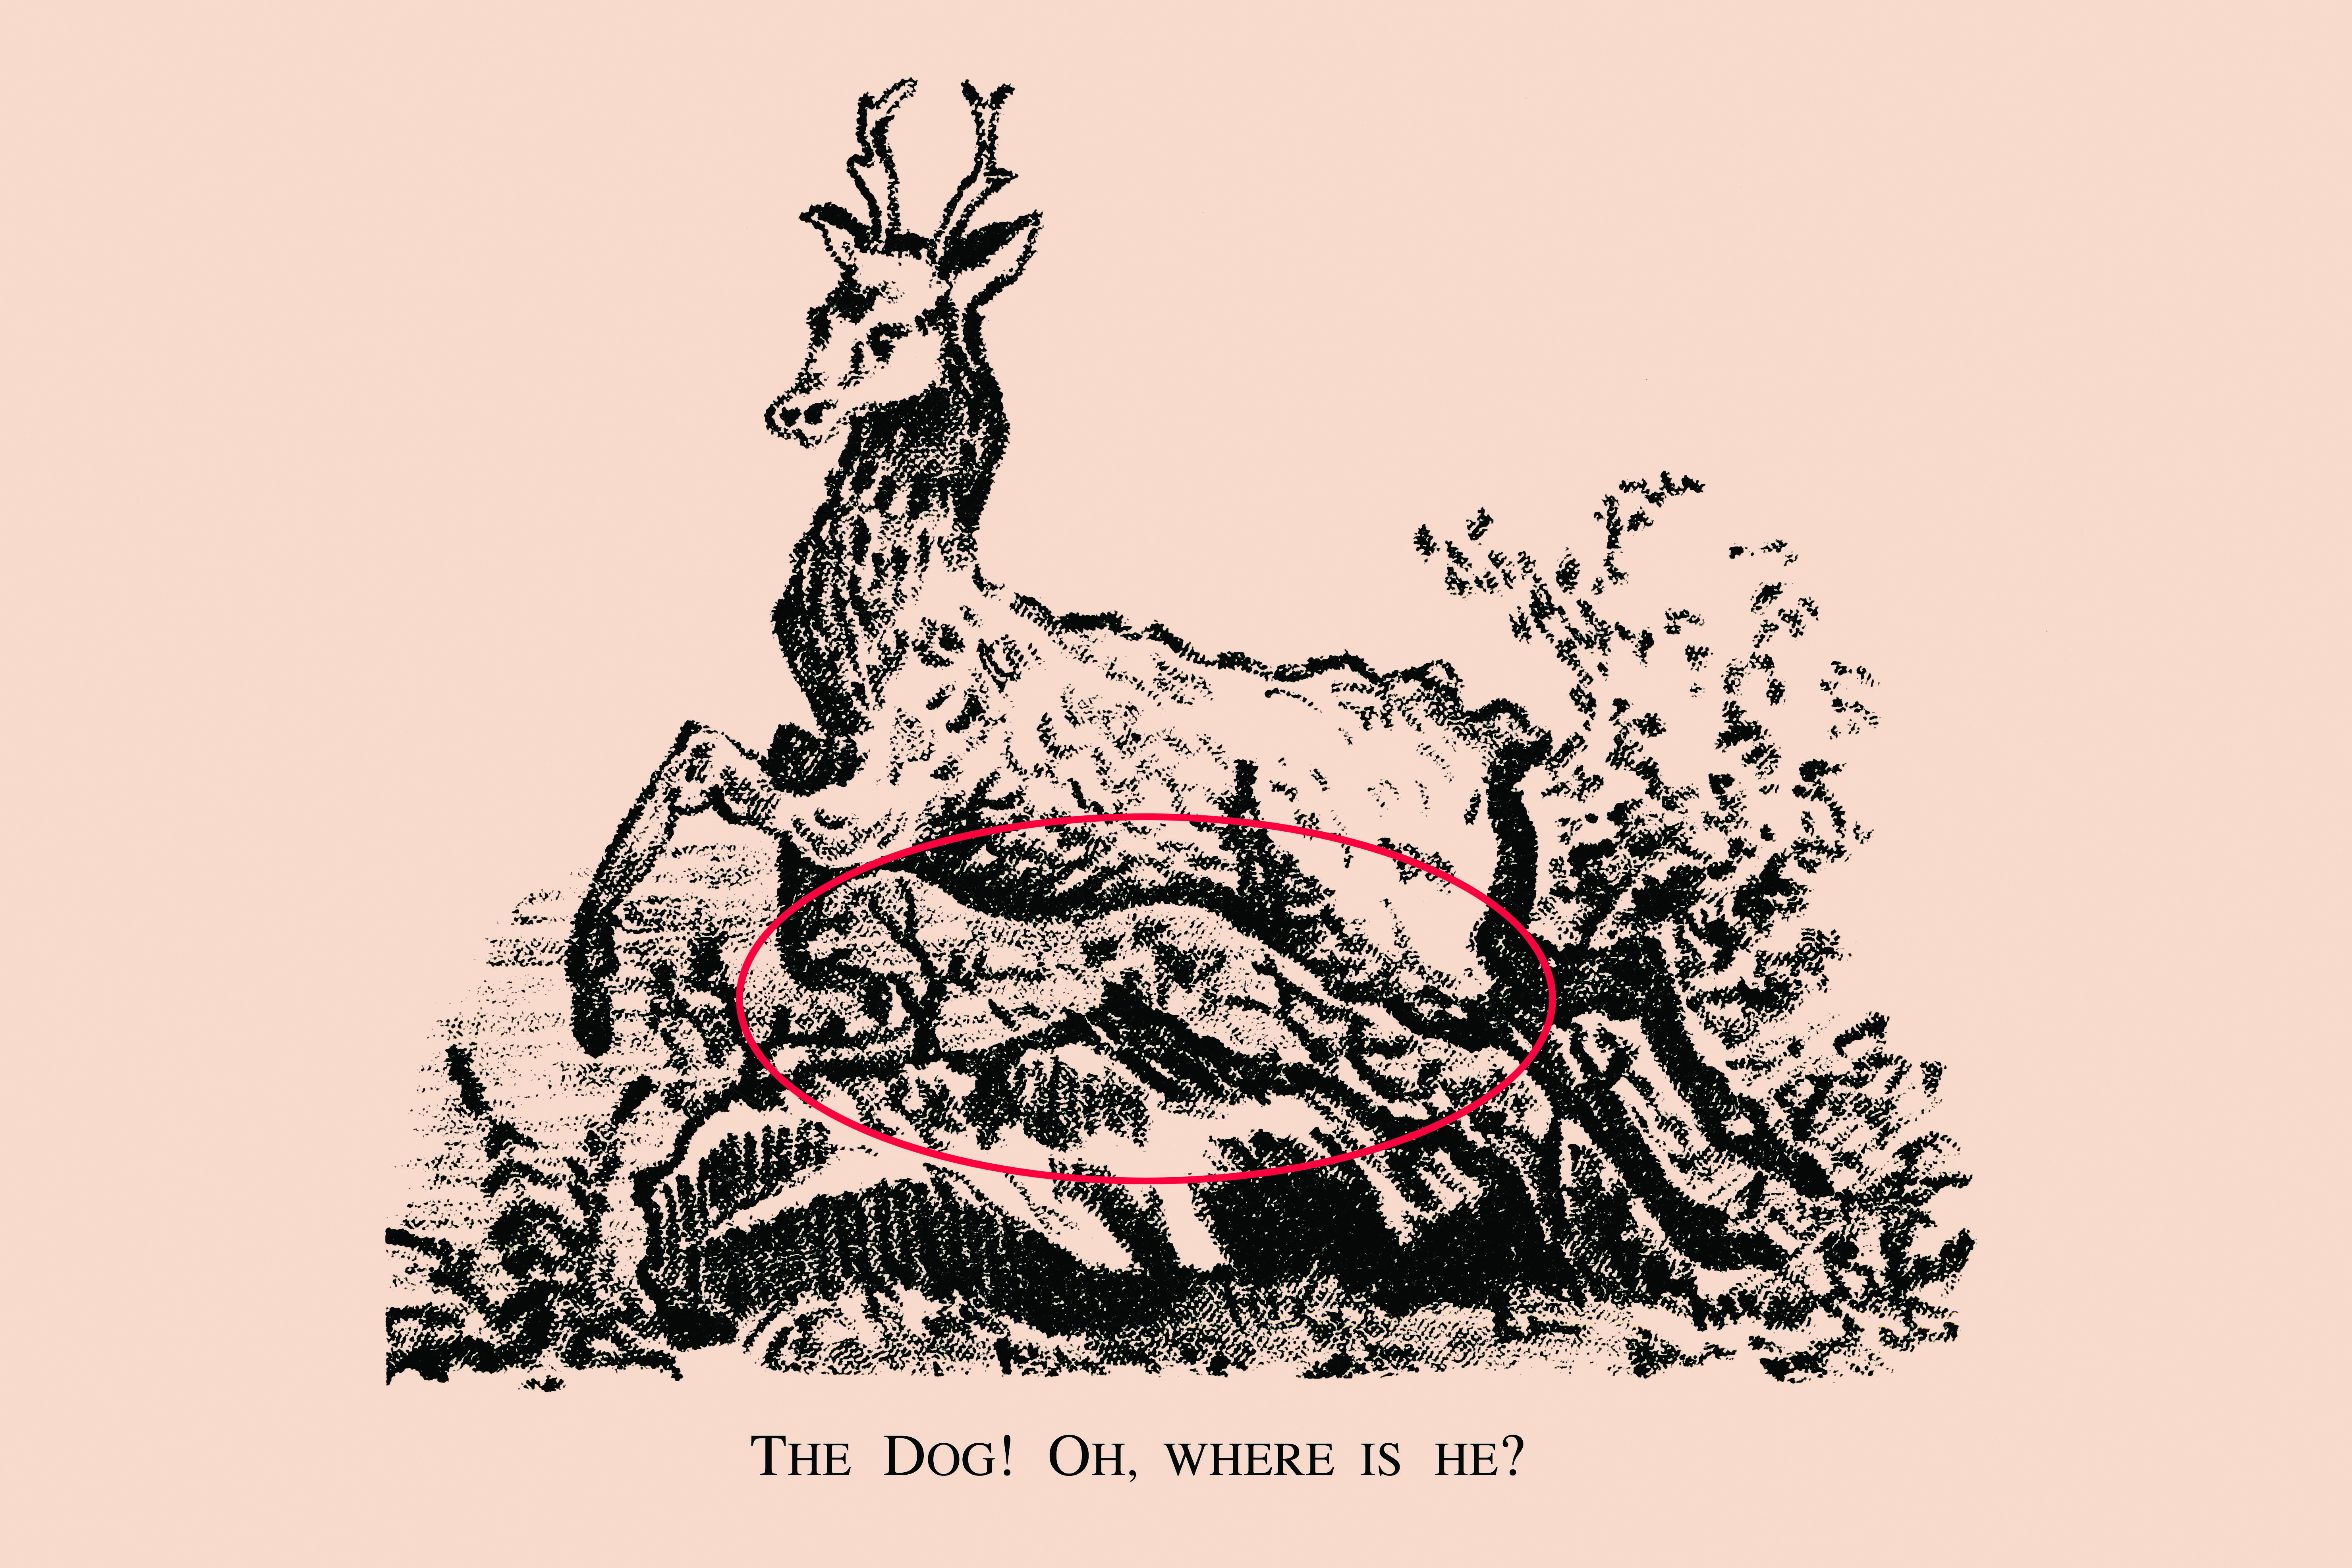 Konnten Sie den versteckten Hund entdecken?